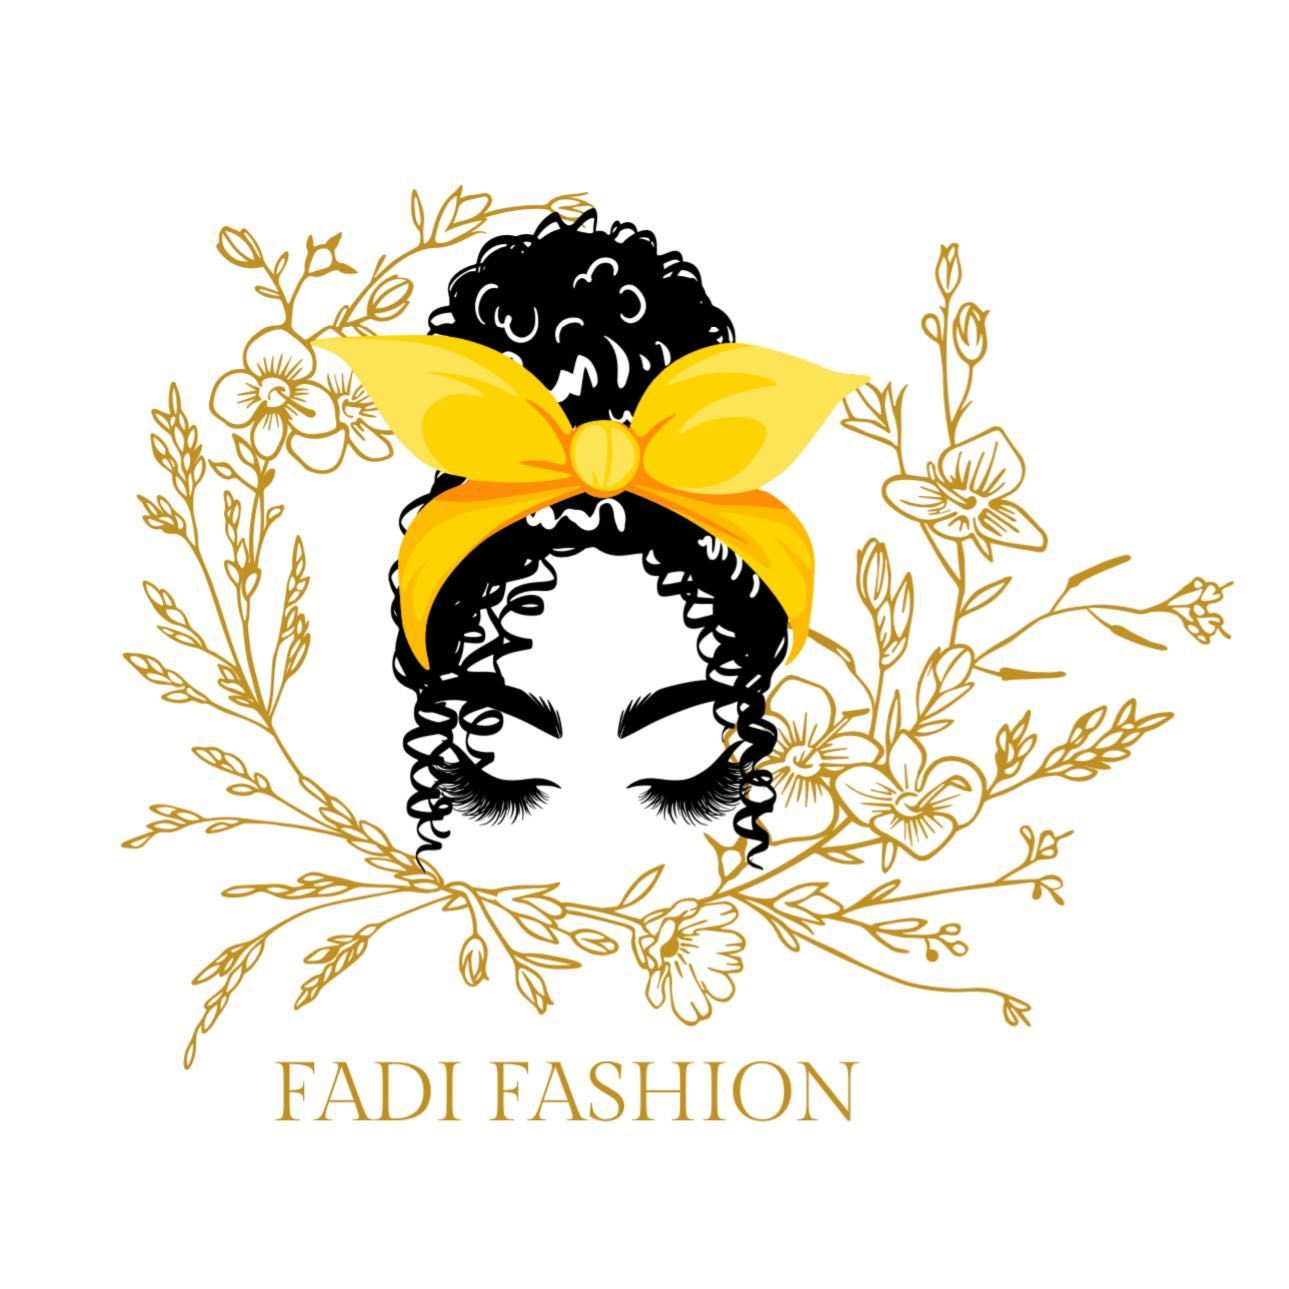 Fadi fashion, 3359 Coachman Rd, St Paul, 55121